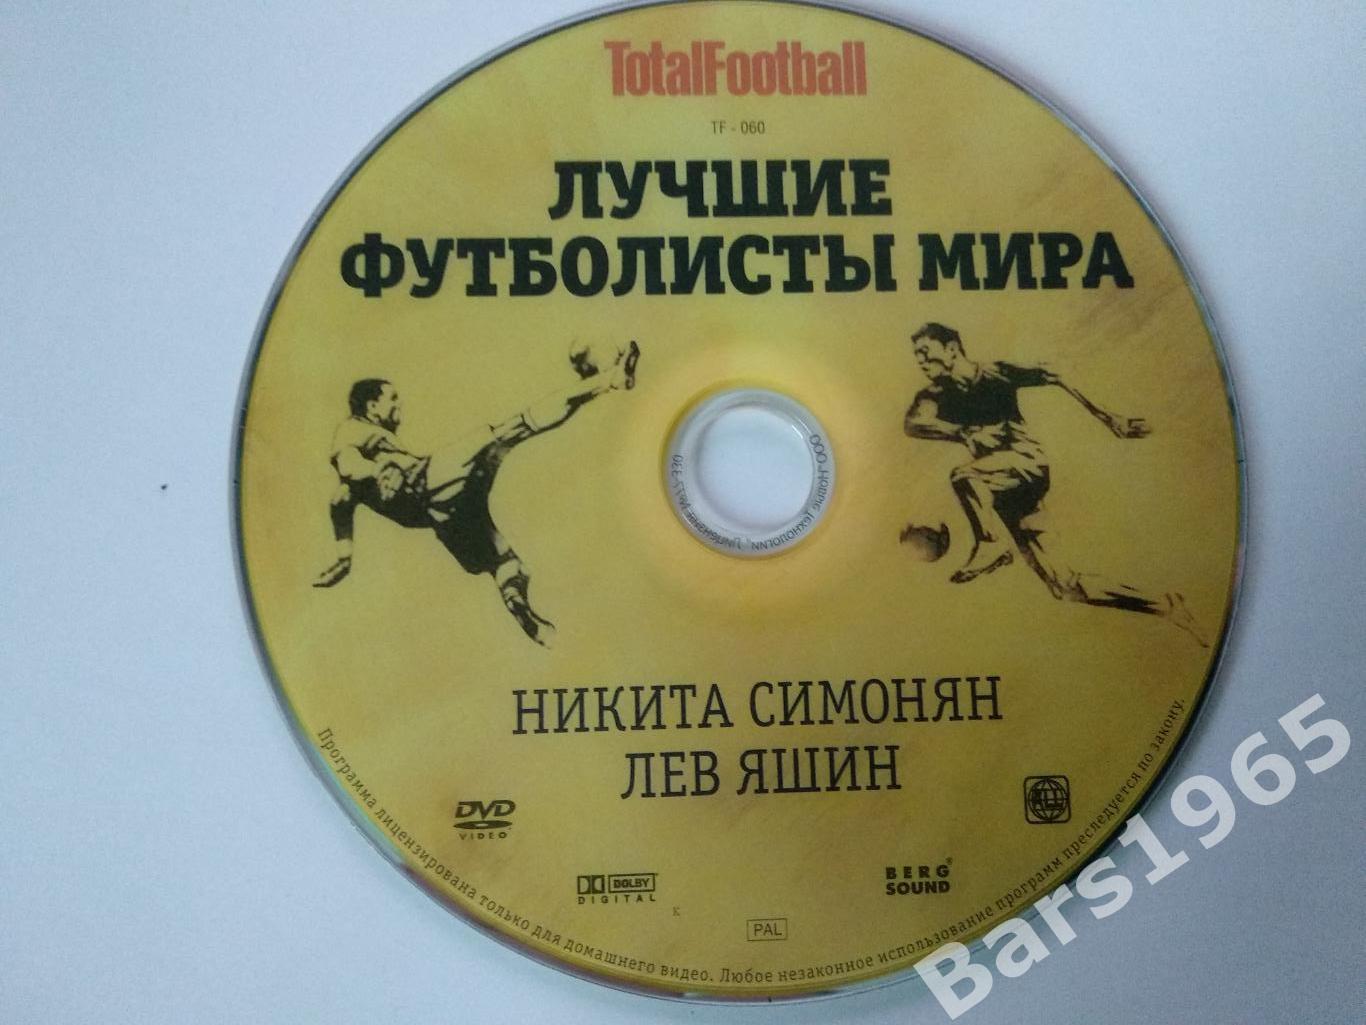 Лучшие футболисты мира Никита Симонян, Лев Яшин DVD Totalfootball